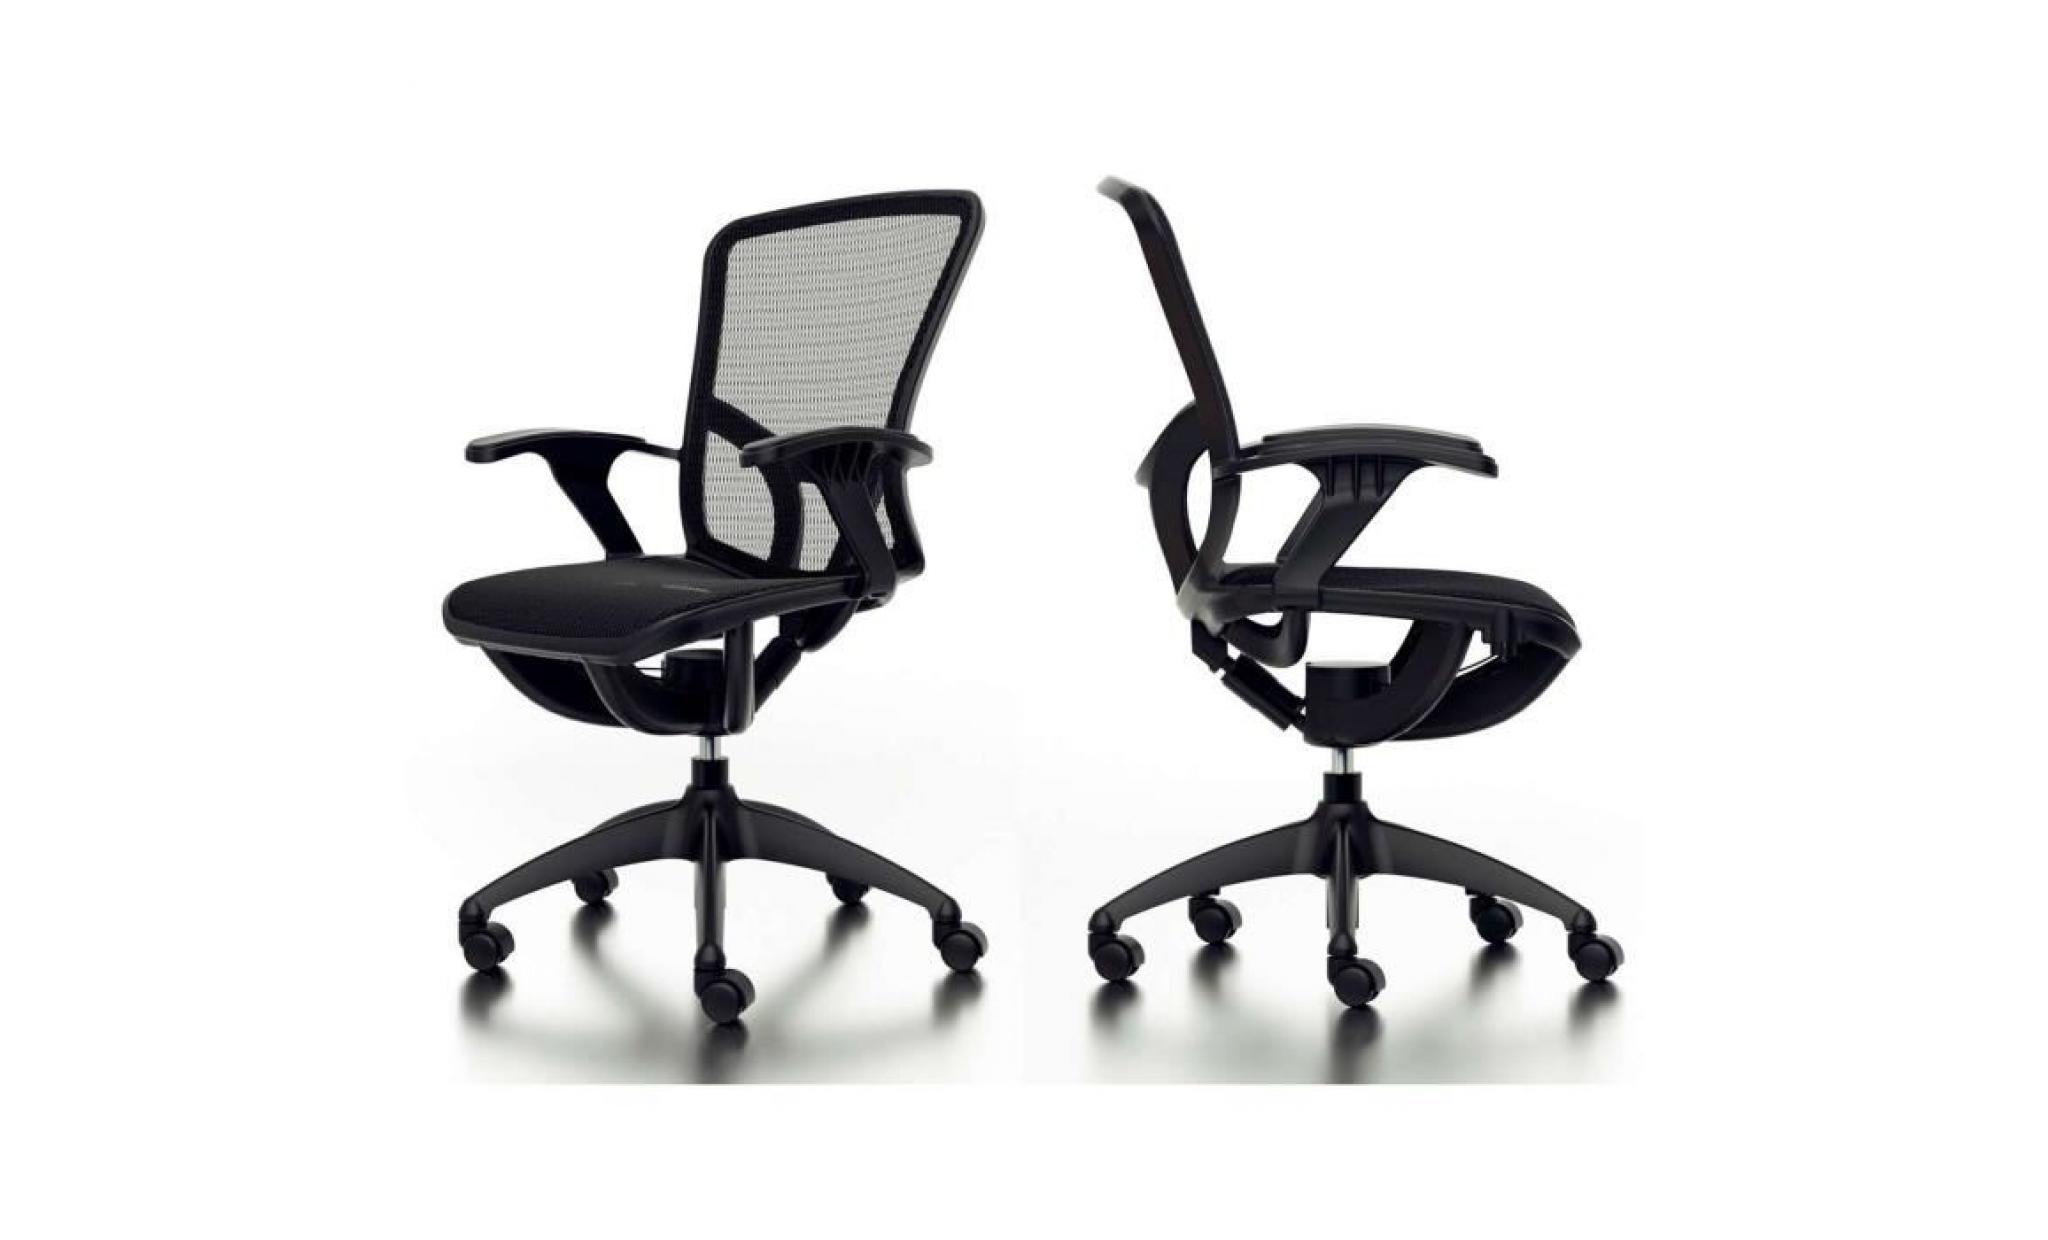 livinxs® fauteuil de bureau  officeline malmö , colori noir (66337)